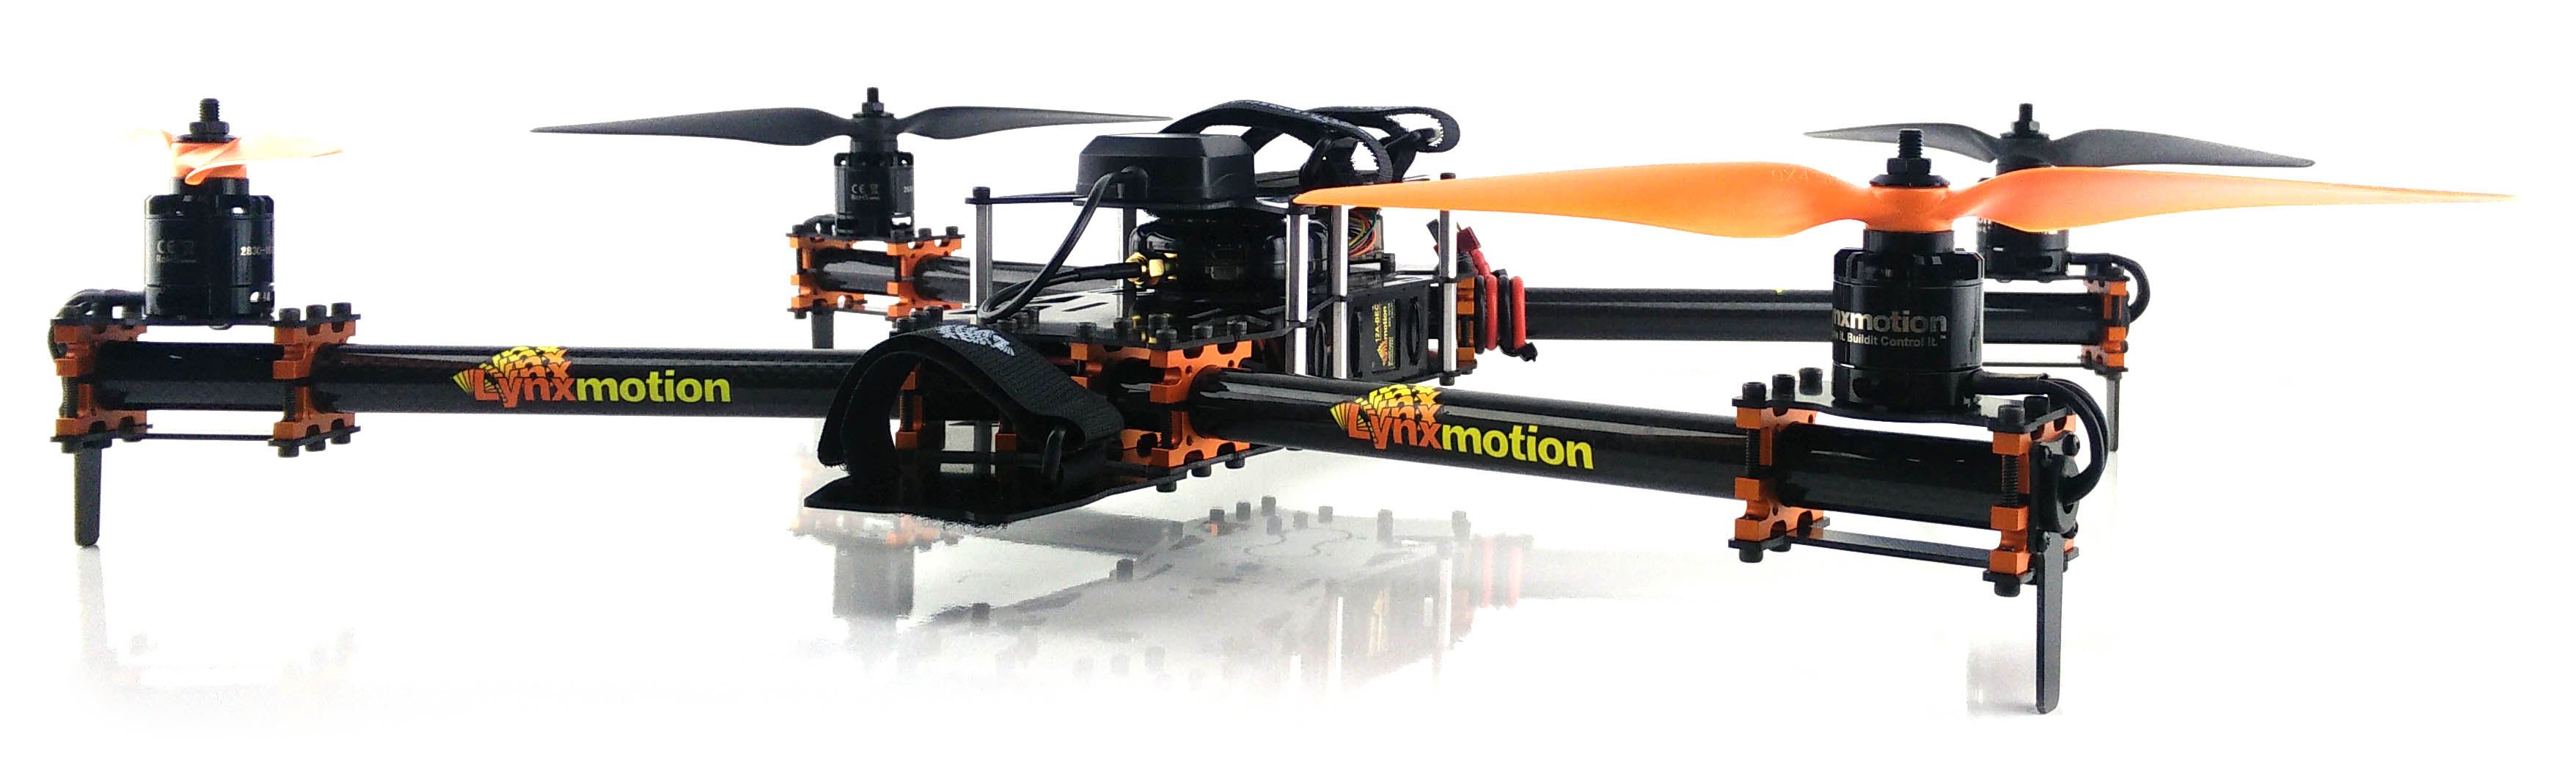 Lynxmotion HQuad500 Drone Kit  - Cliquer pour agrandir